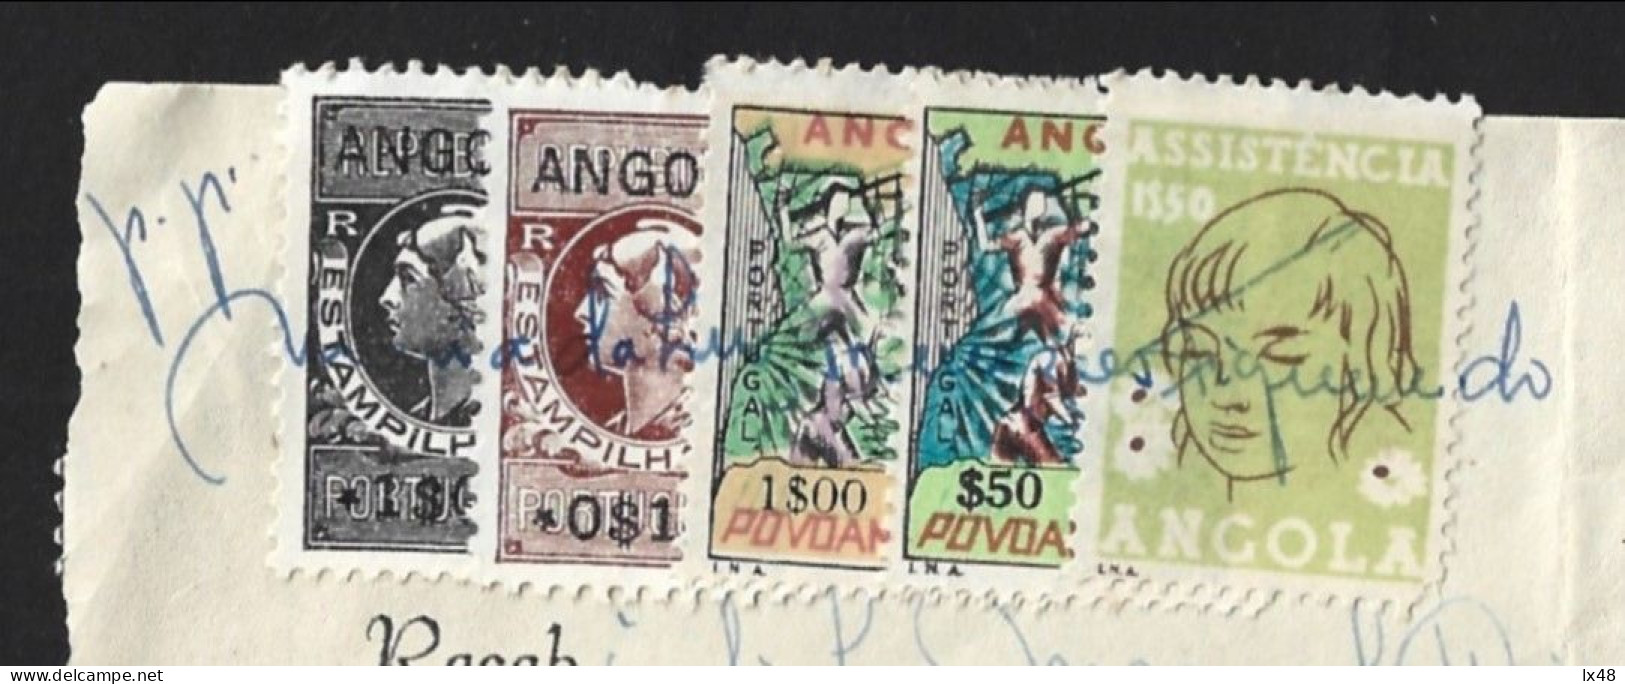 Recibo De Angola 1971 Com Stamps Assistência E Povoamento Utilizados Como Estampilha Fiscal. Angola Receipt From 1971 Wi - Briefe U. Dokumente